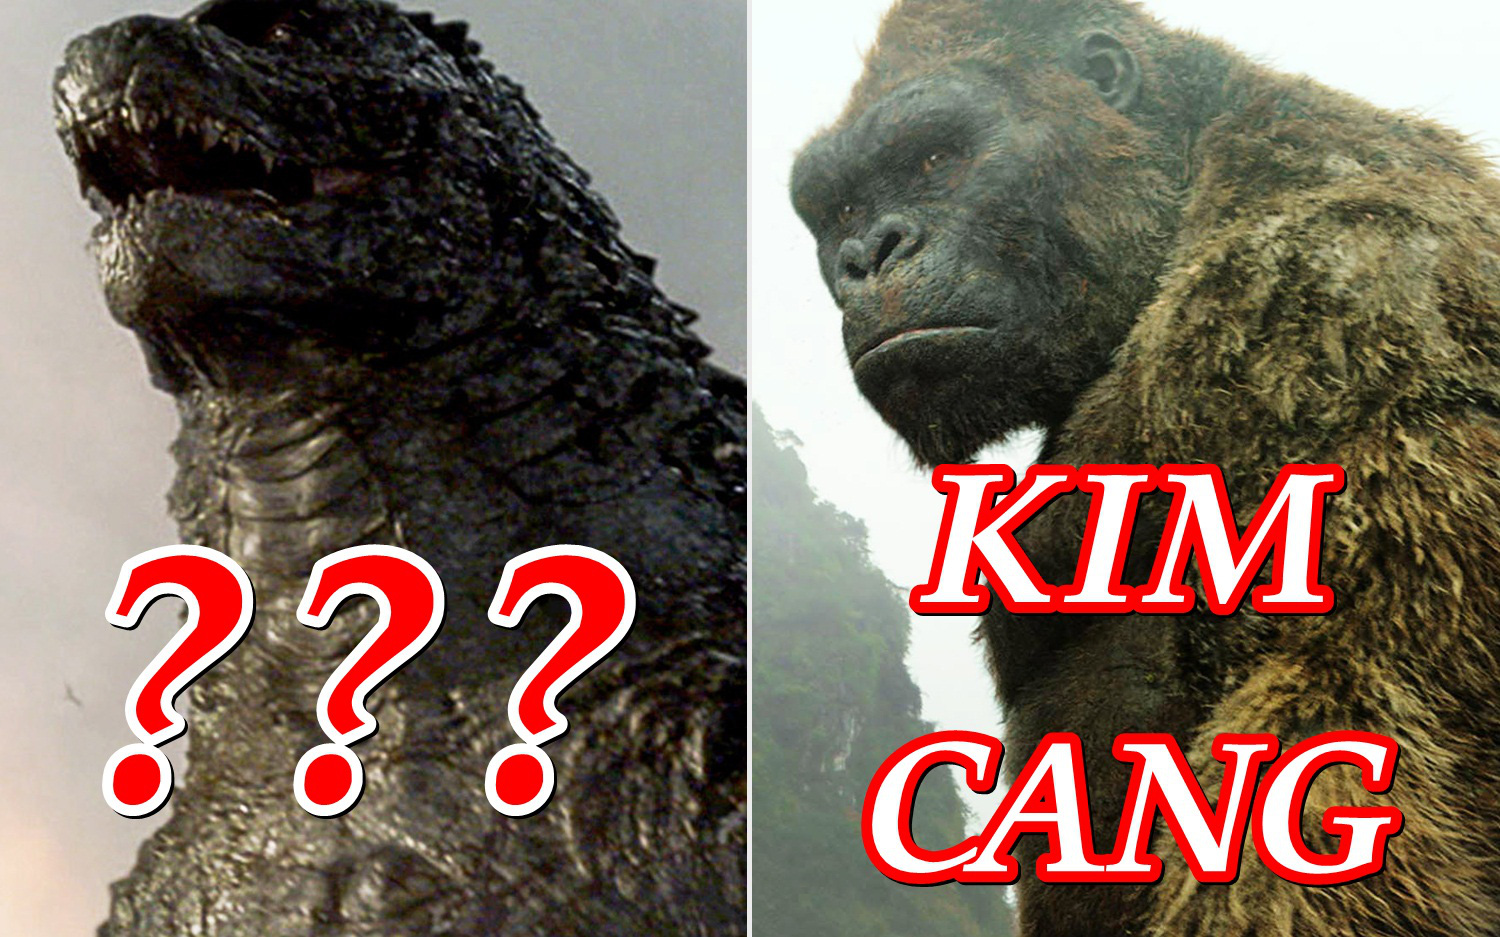 Godzilla vs. Kong gom 352 tỷ sau 1 ngày ở Trung Quốc, nhưng tức cười nhất là tên phiên âm của cặp quái thú?